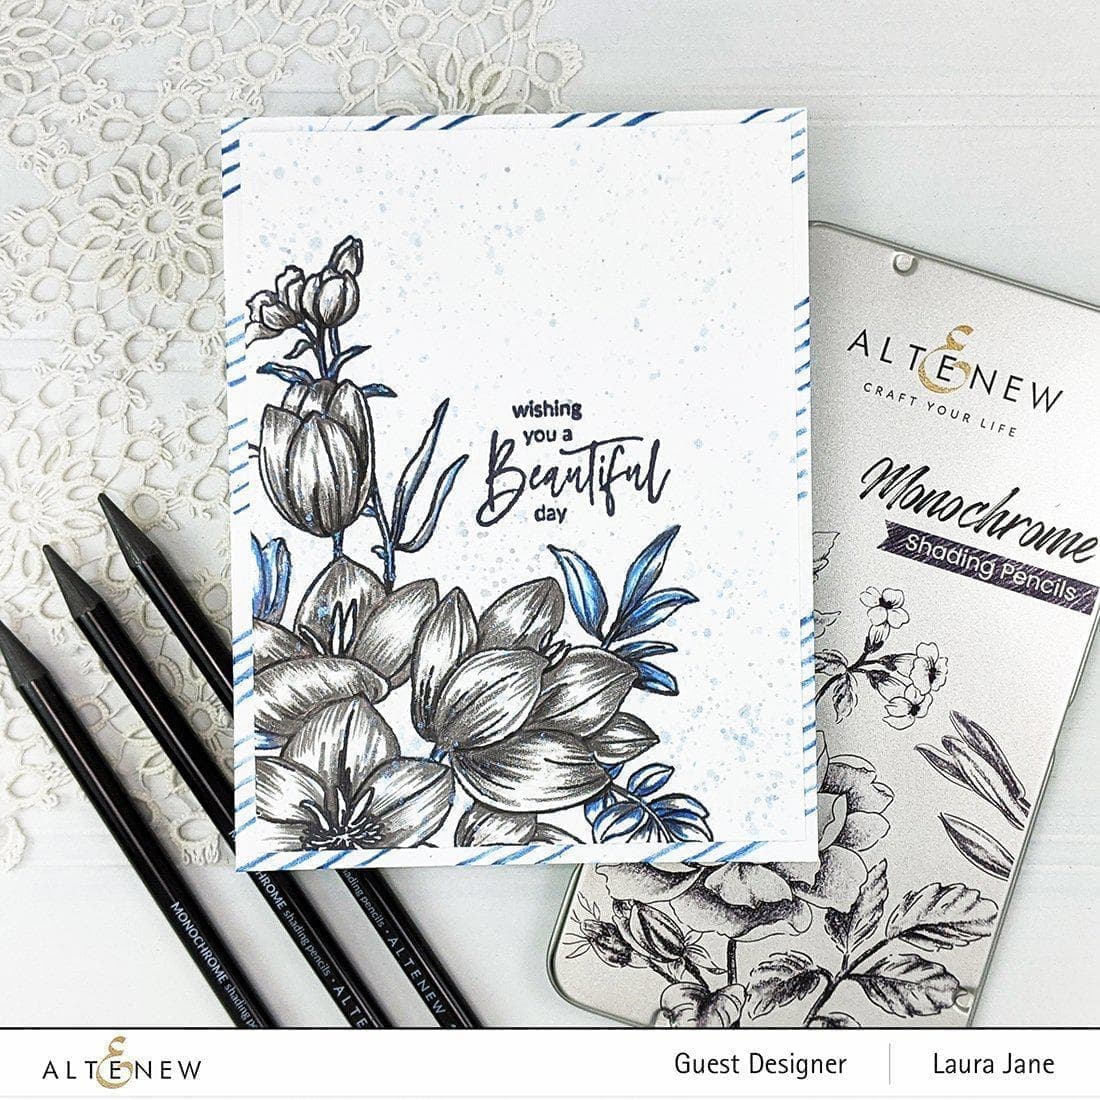 Altenew Stamp & Art Supplies Bundle Paint-A-Flower: Waterlily Dahlia & Monochrome Shading Pencils Bundle